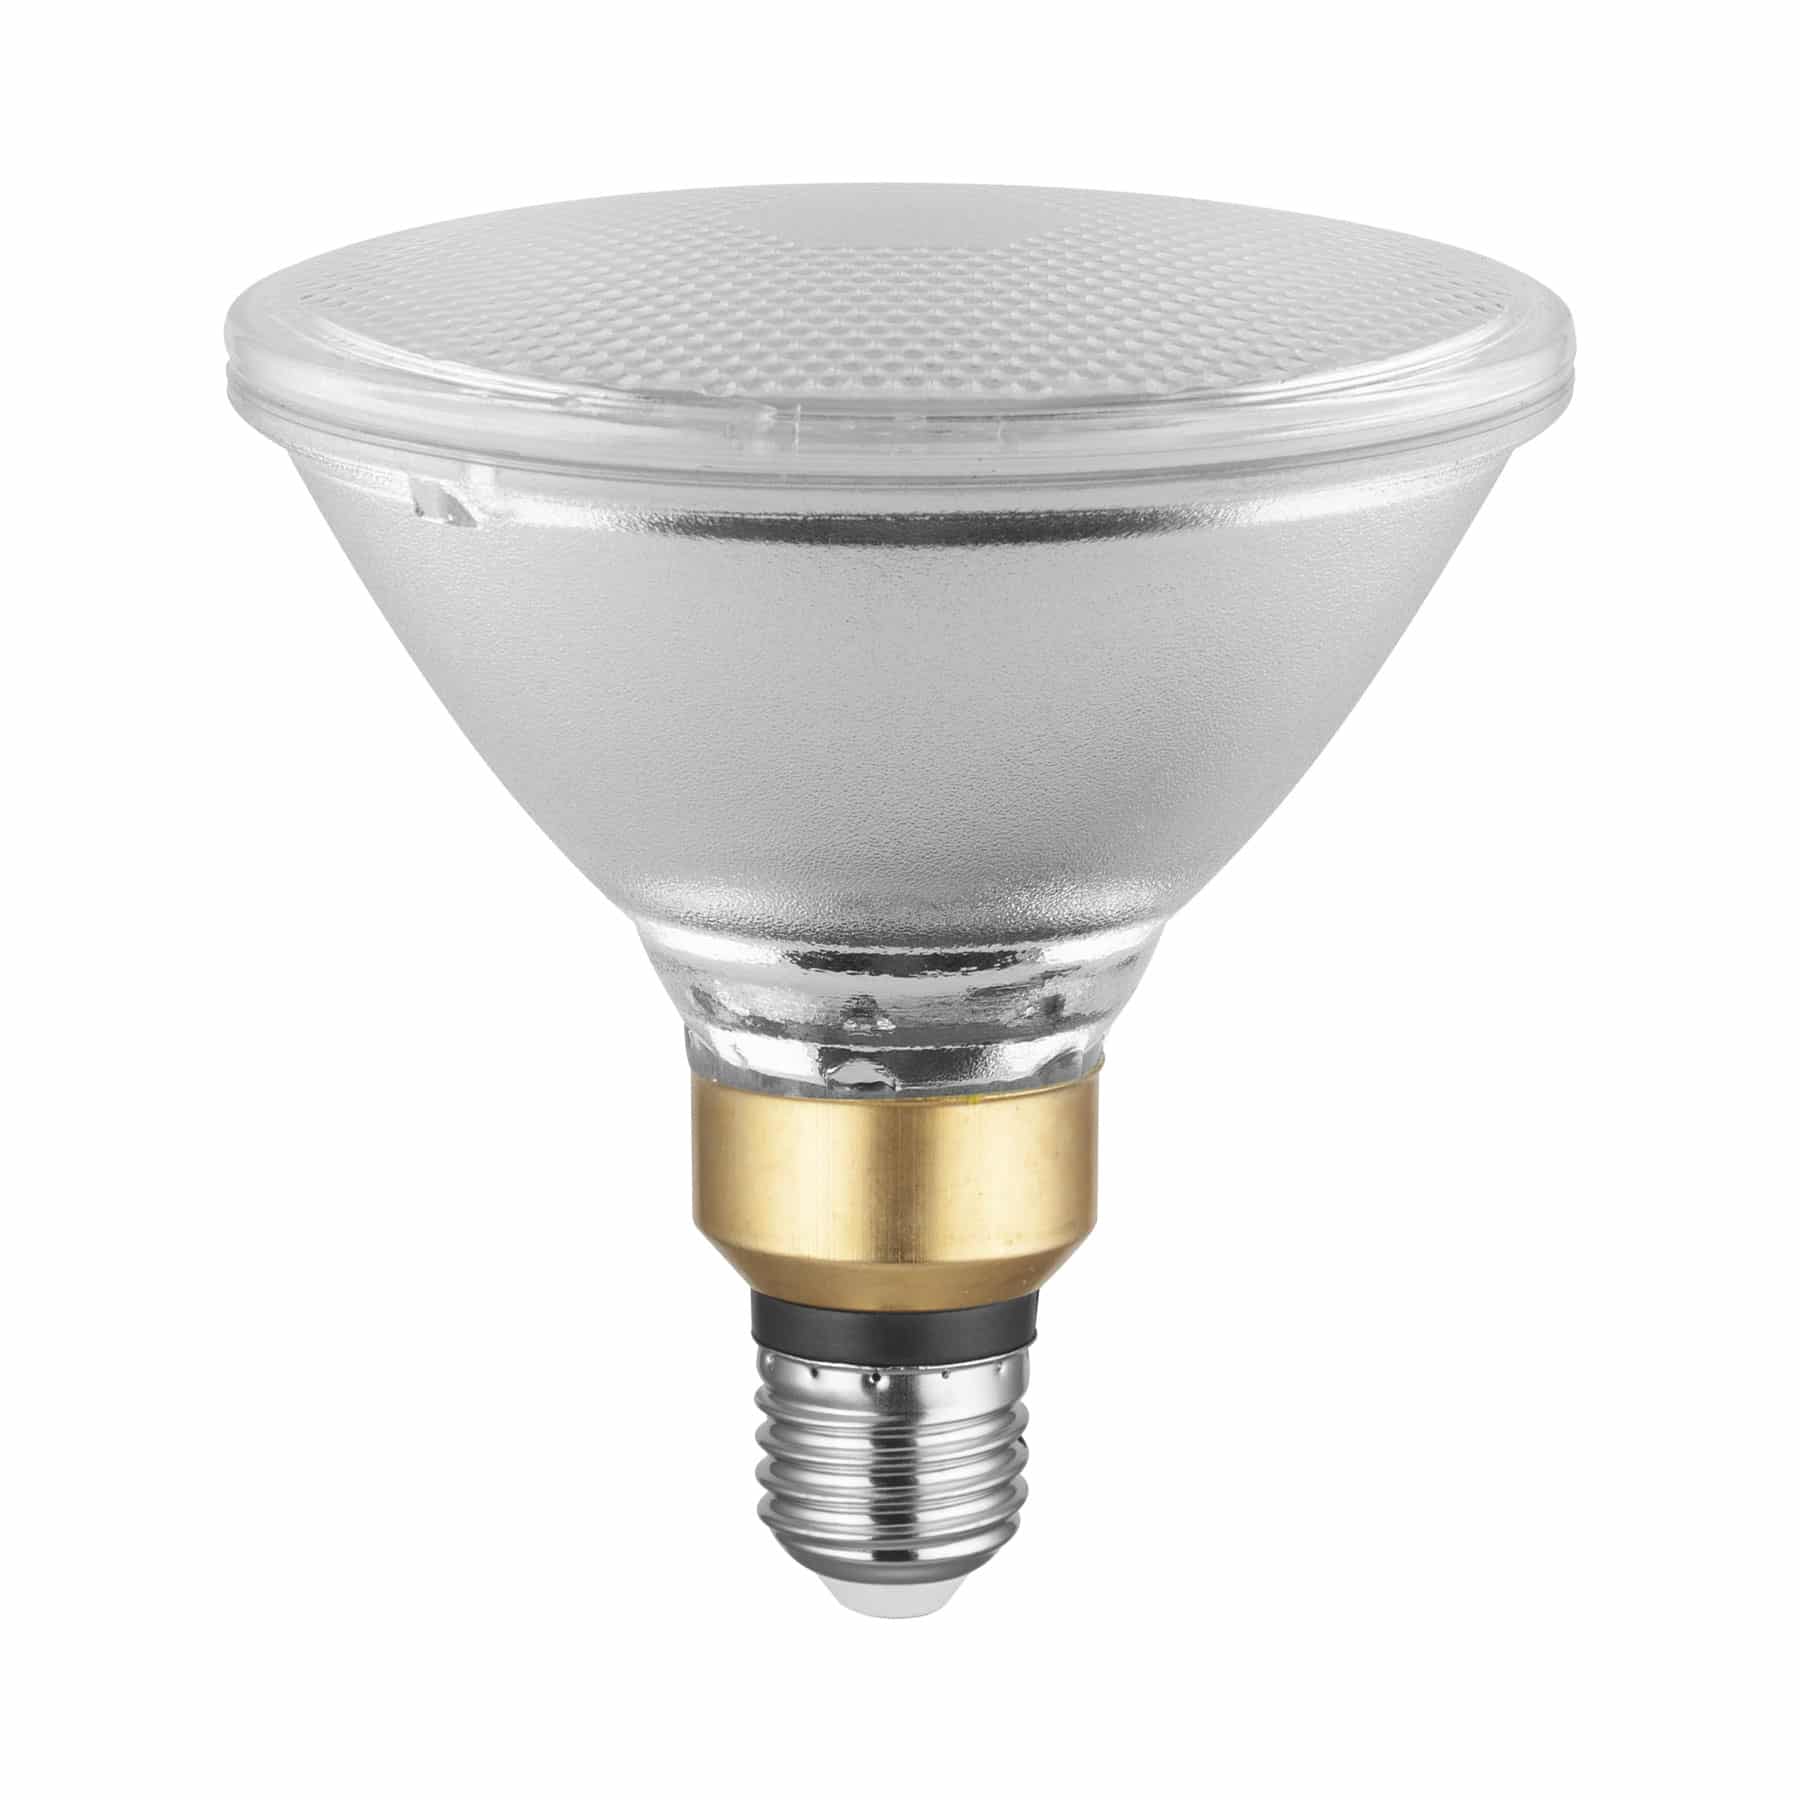 Screw fit led bulbs